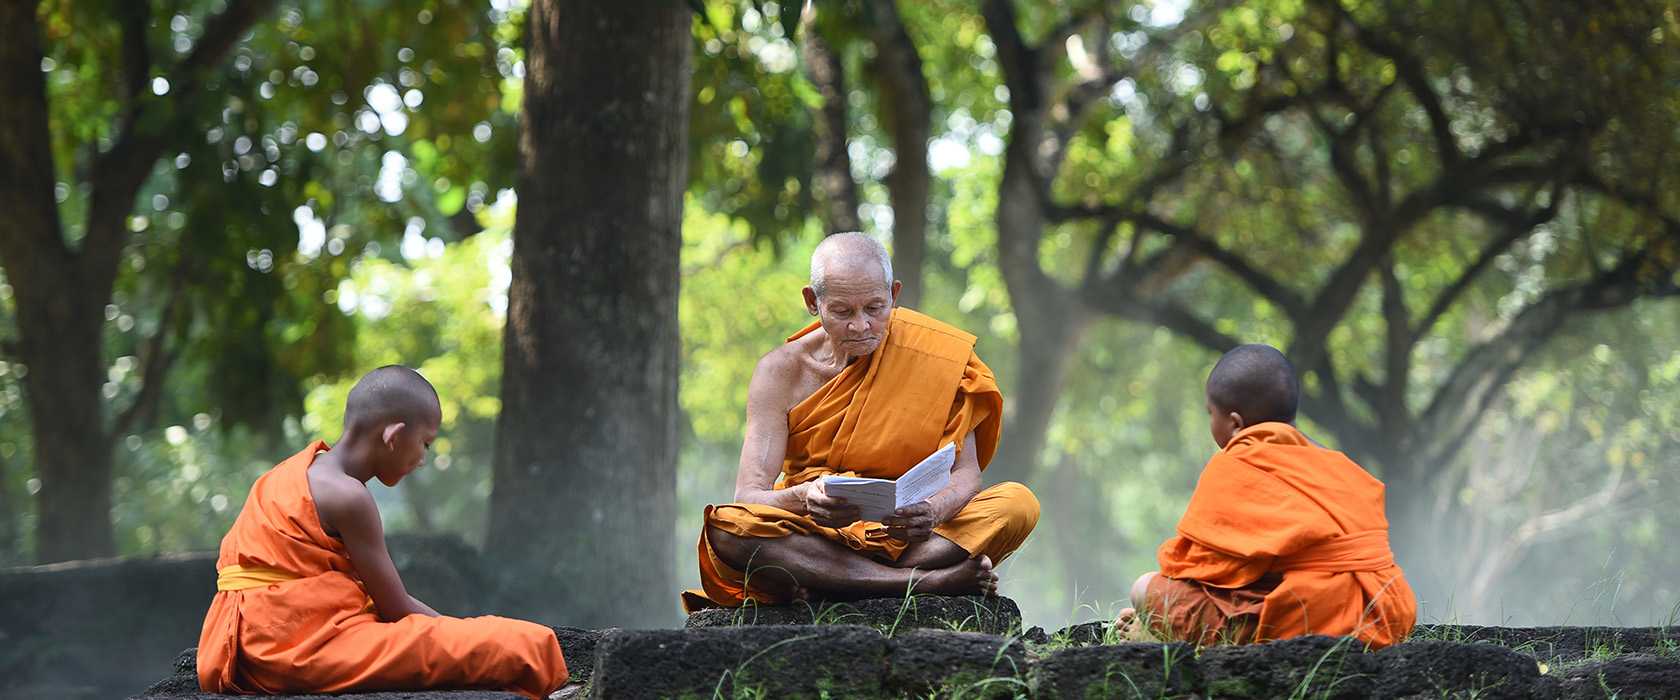 Принципы дзэн — буддизма